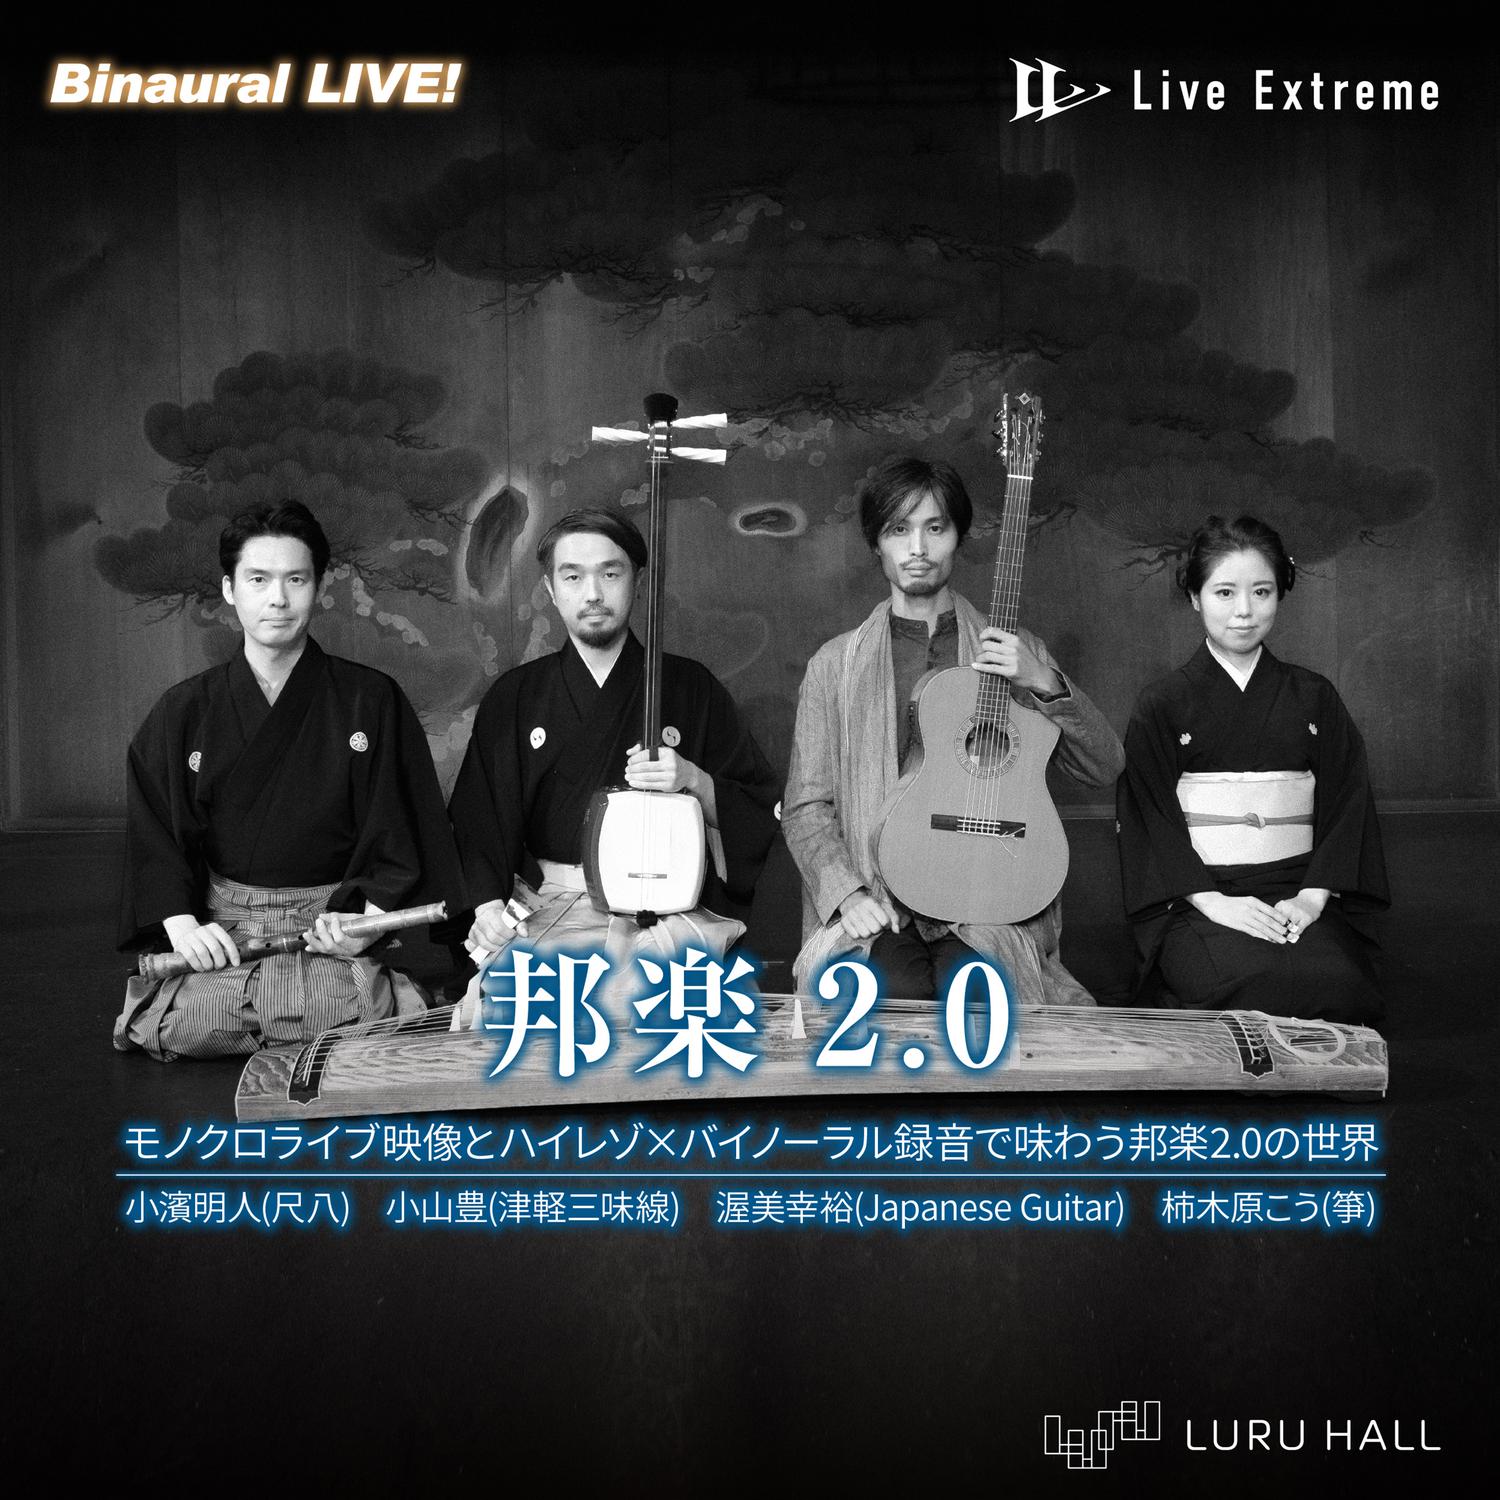 邦楽2.0 Binaural × LiveExtreme